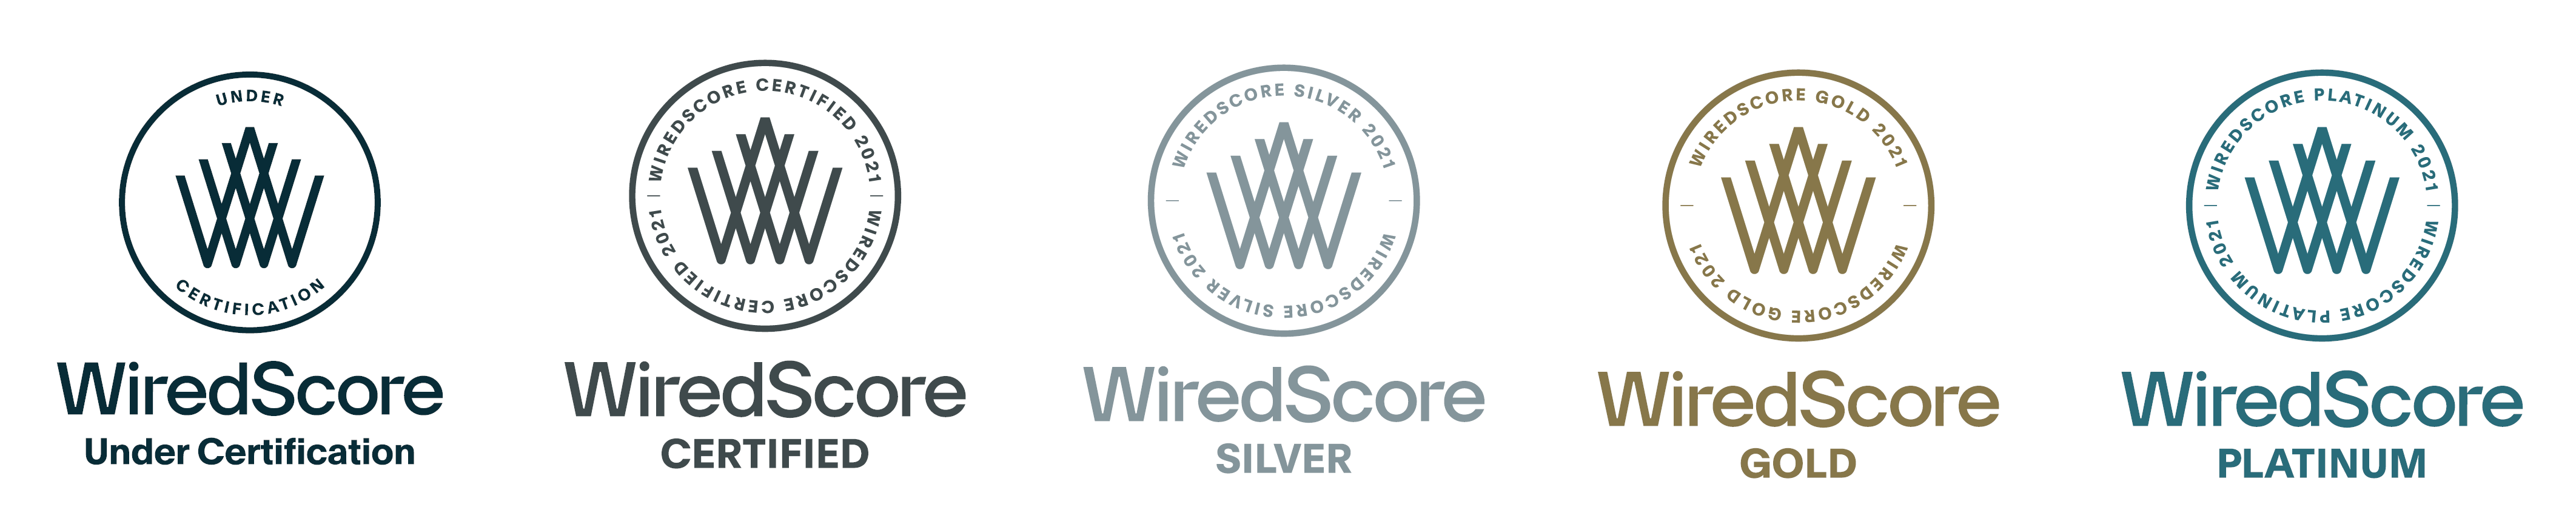 WiredScore Zertifizierung Silber Gold Platin Silver Gold Platinum 